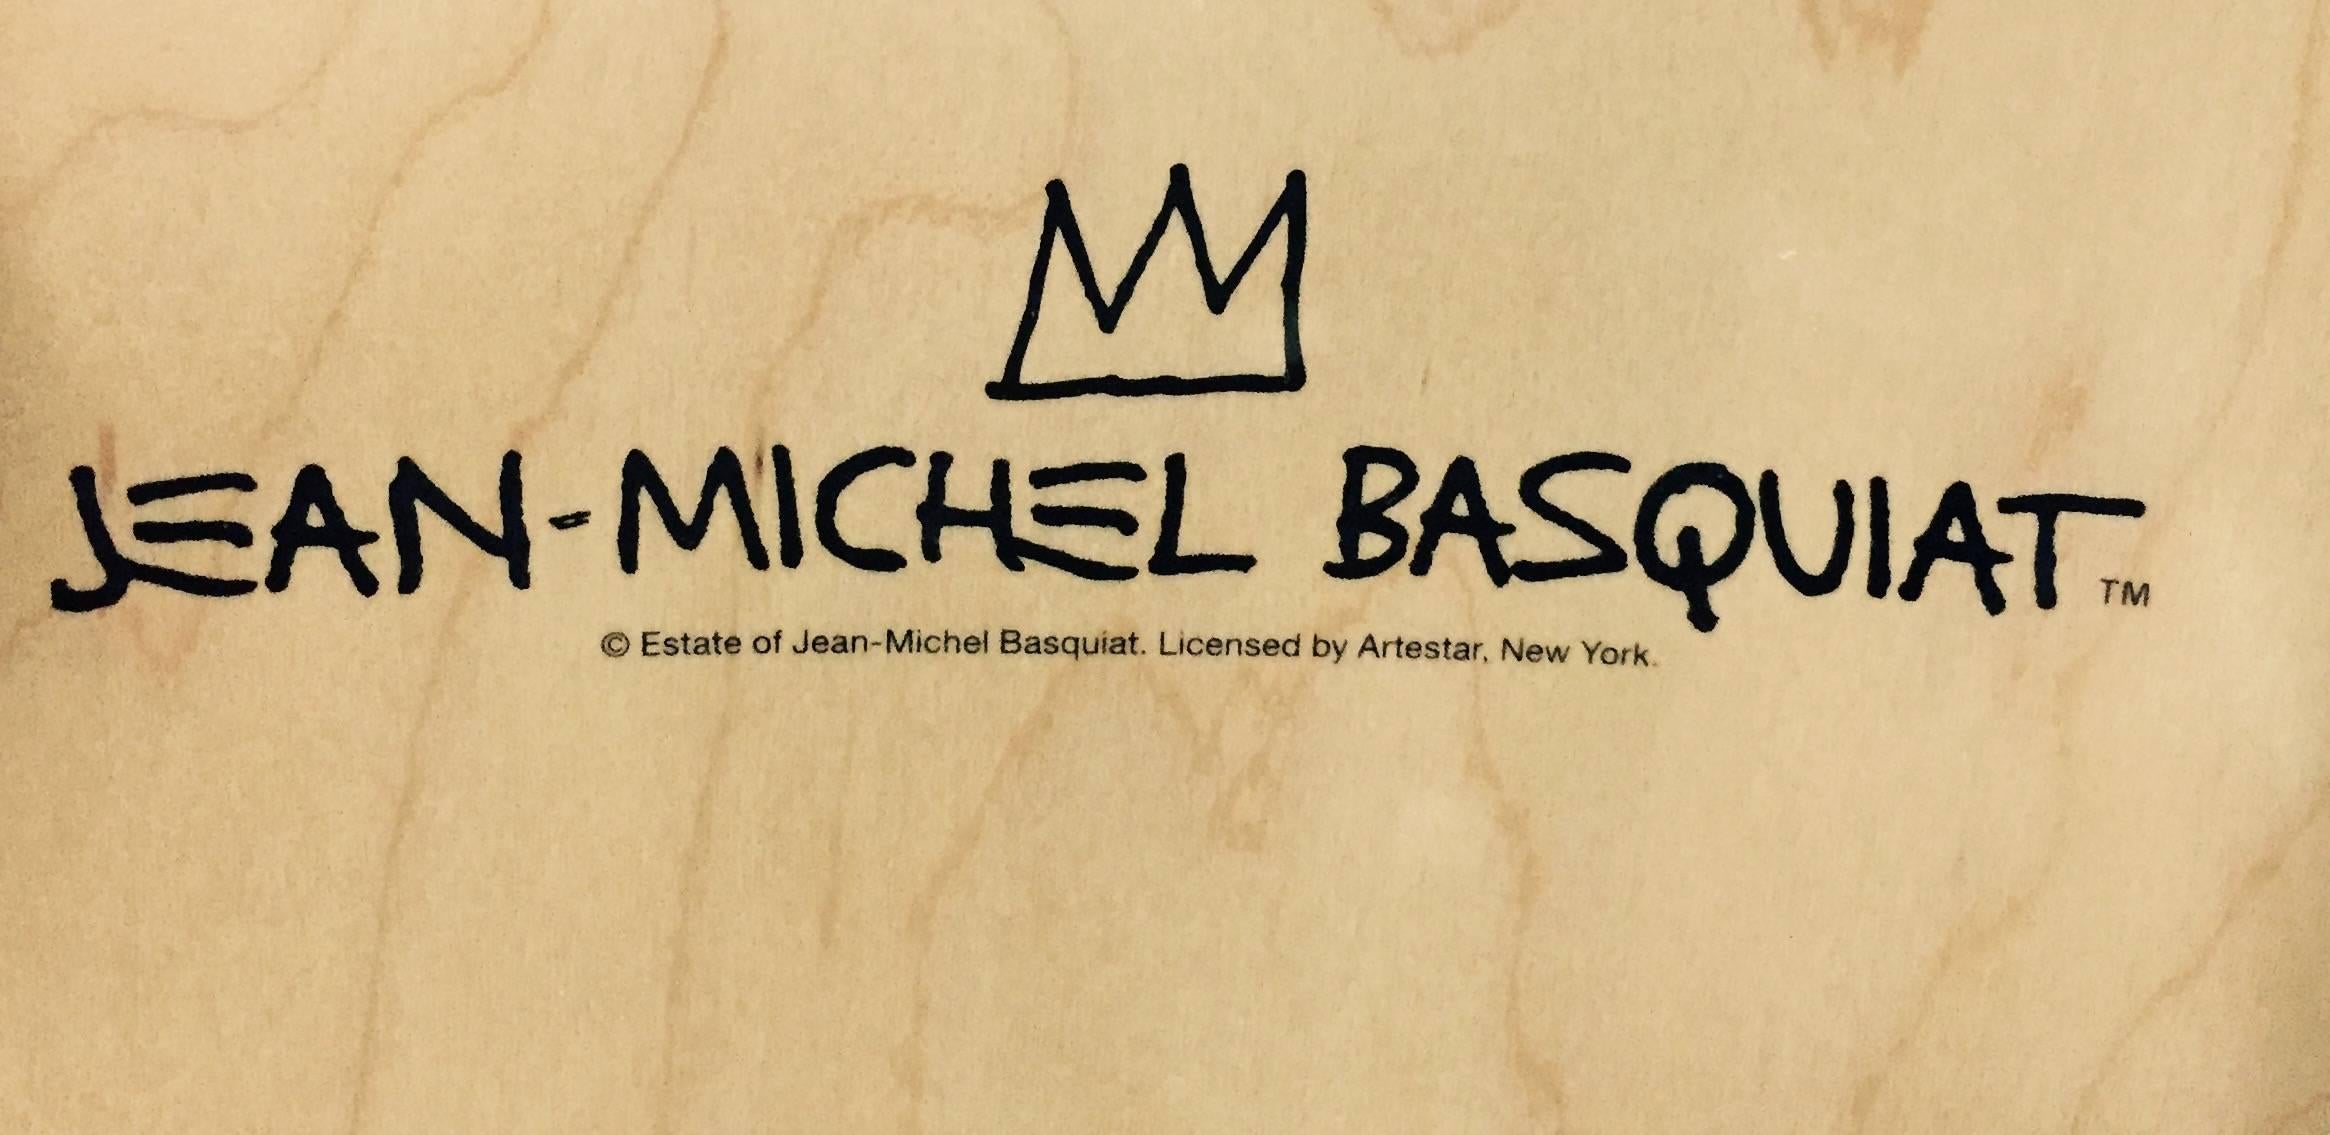 Basquiat In Italian Skateboard Decks (set of 3) - Street Art Art by after Jean-Michel Basquiat